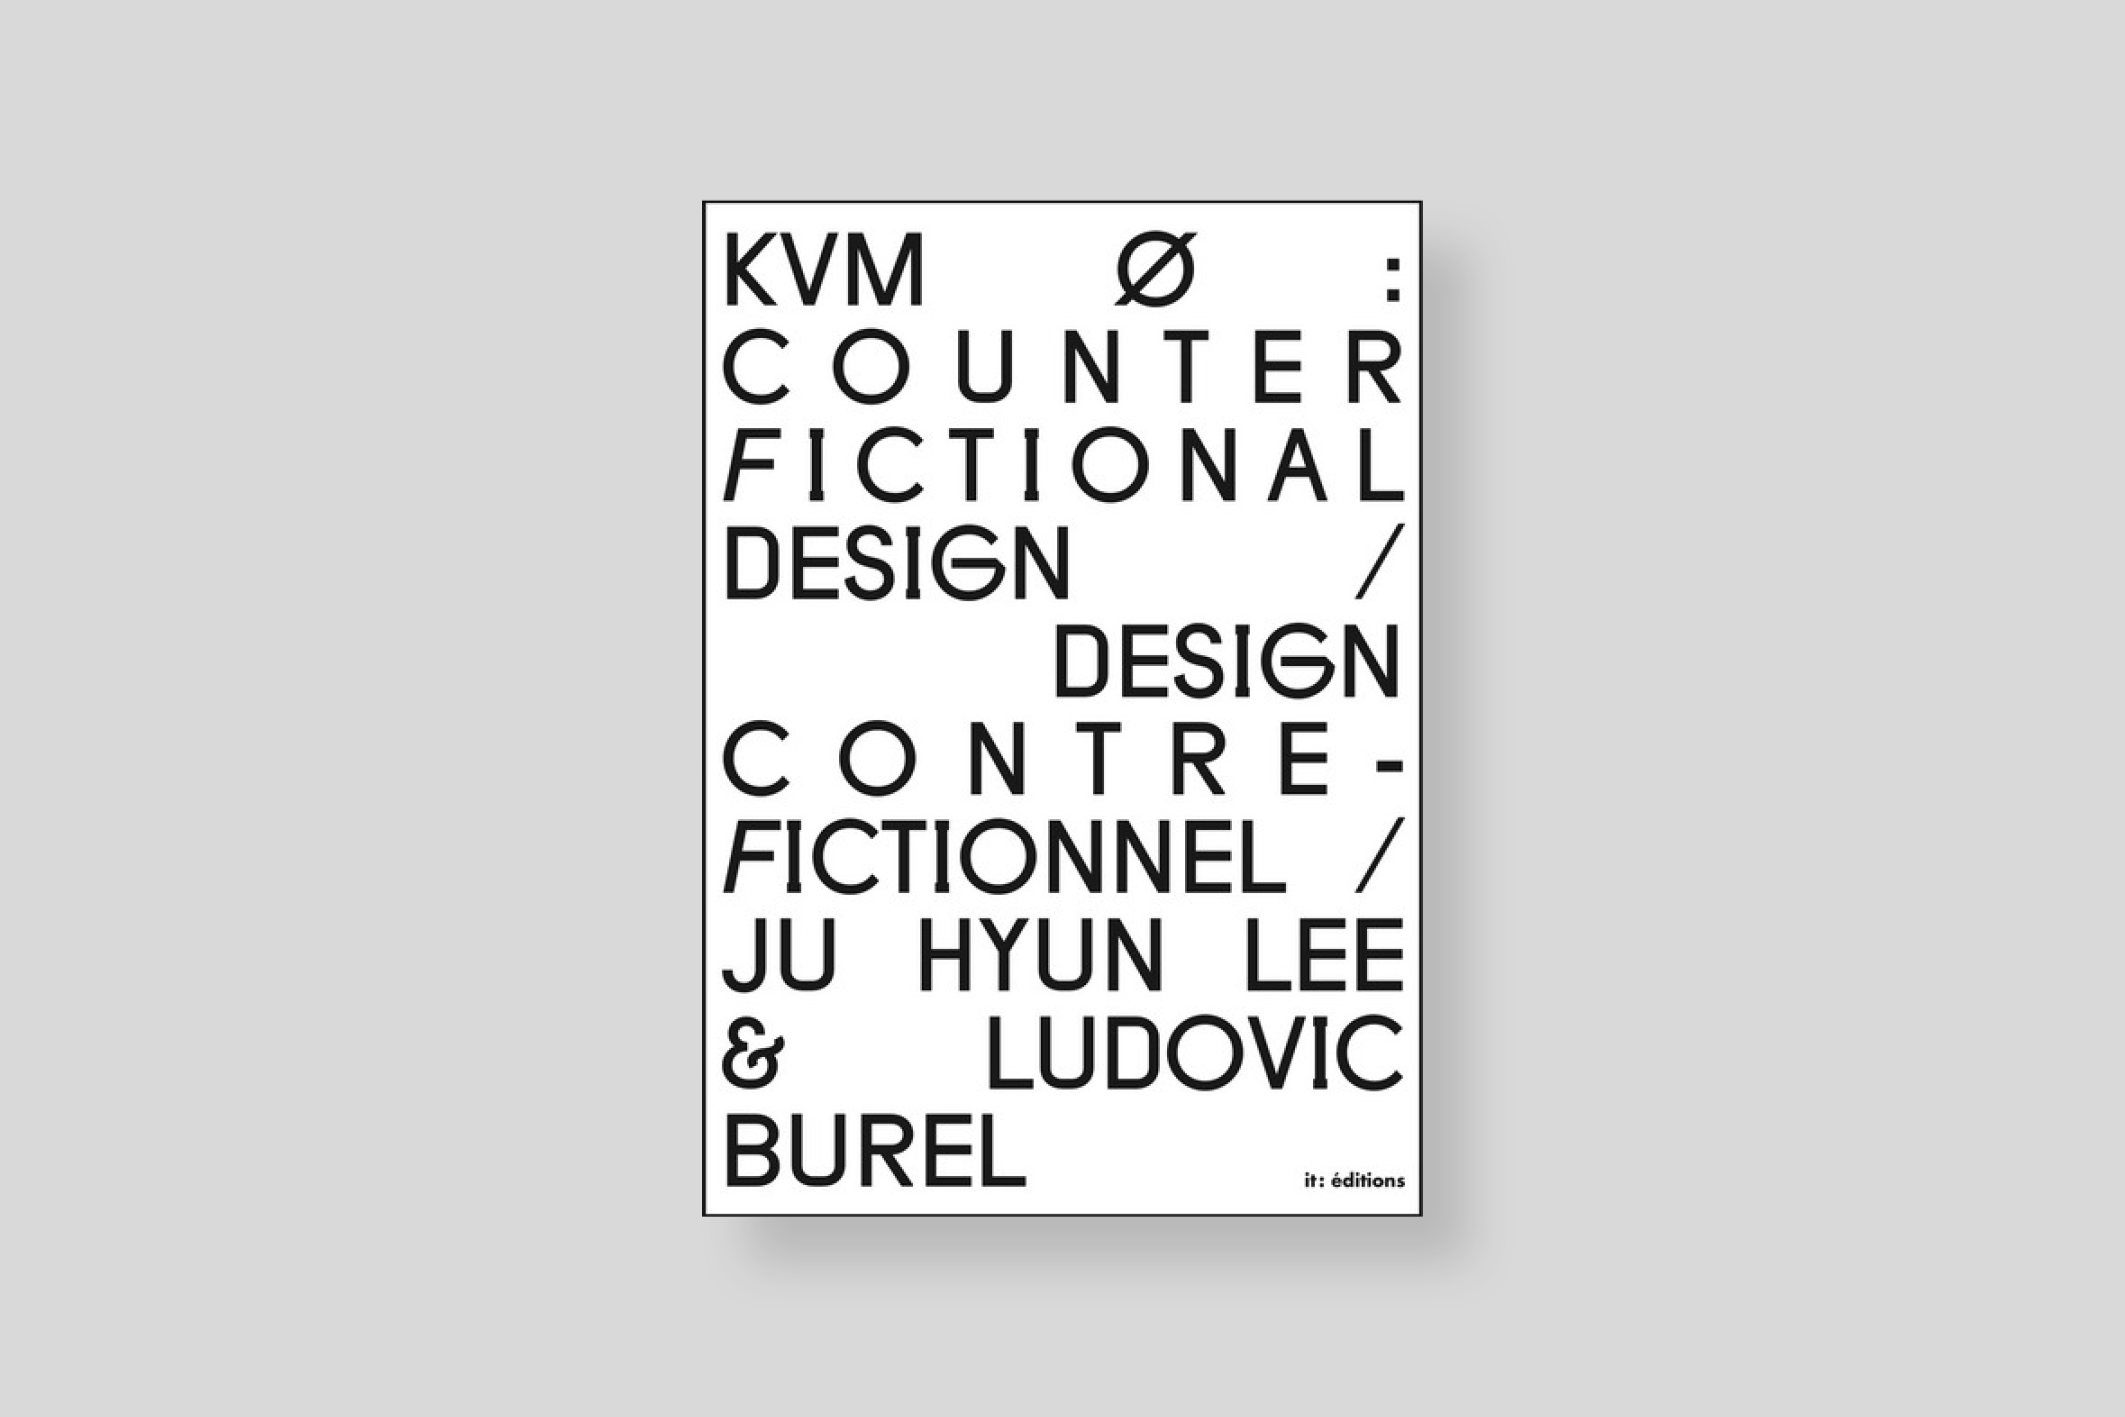 kvm-o-design-contre-fictionnel-burel-hyun-lee-it-editions-cover